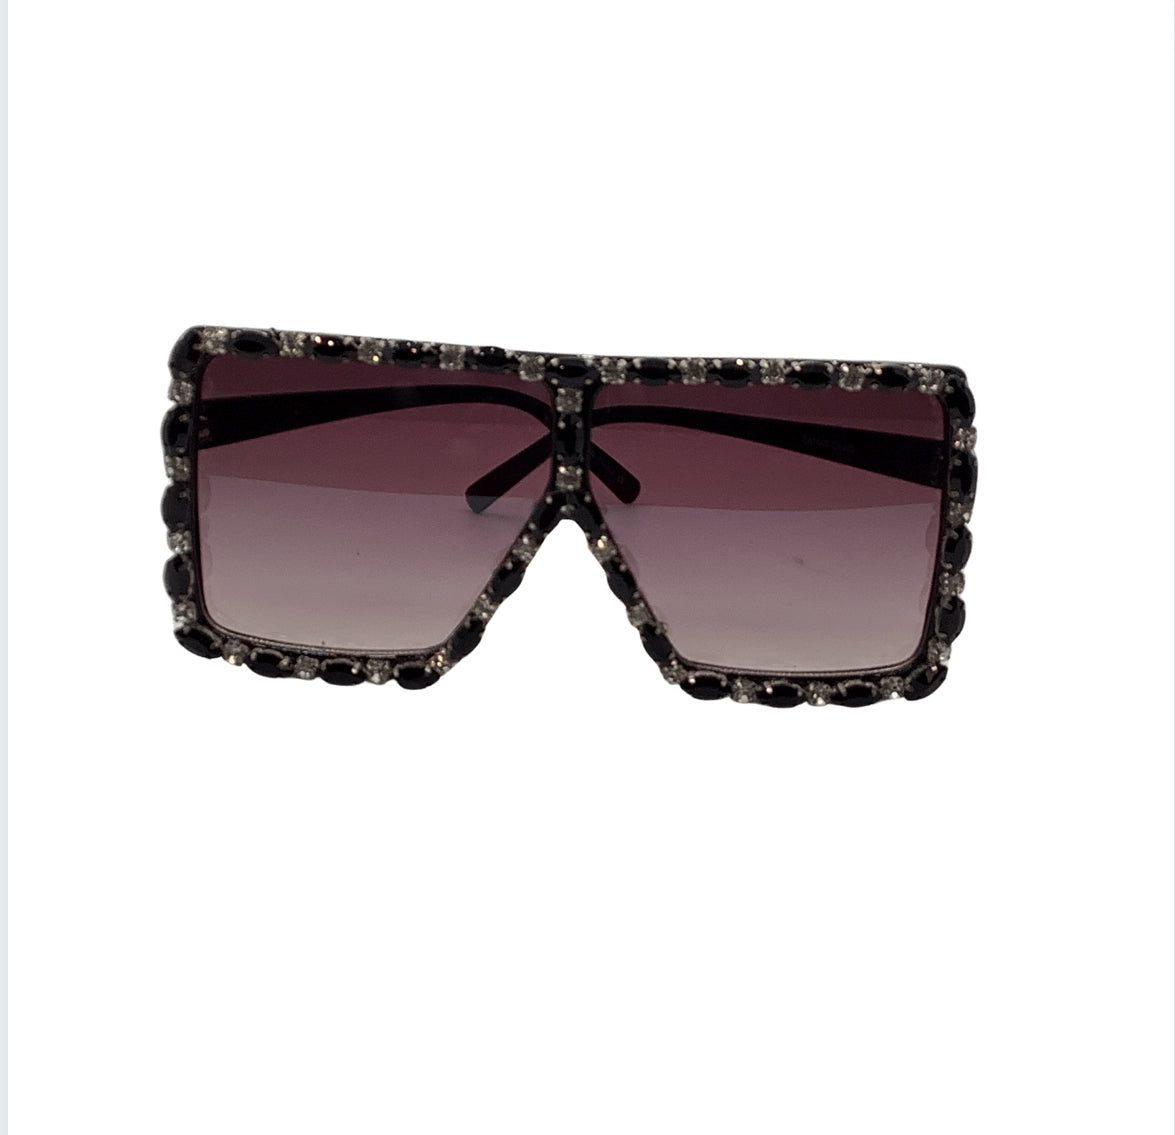 Dana Women's Trendy Sunglasses